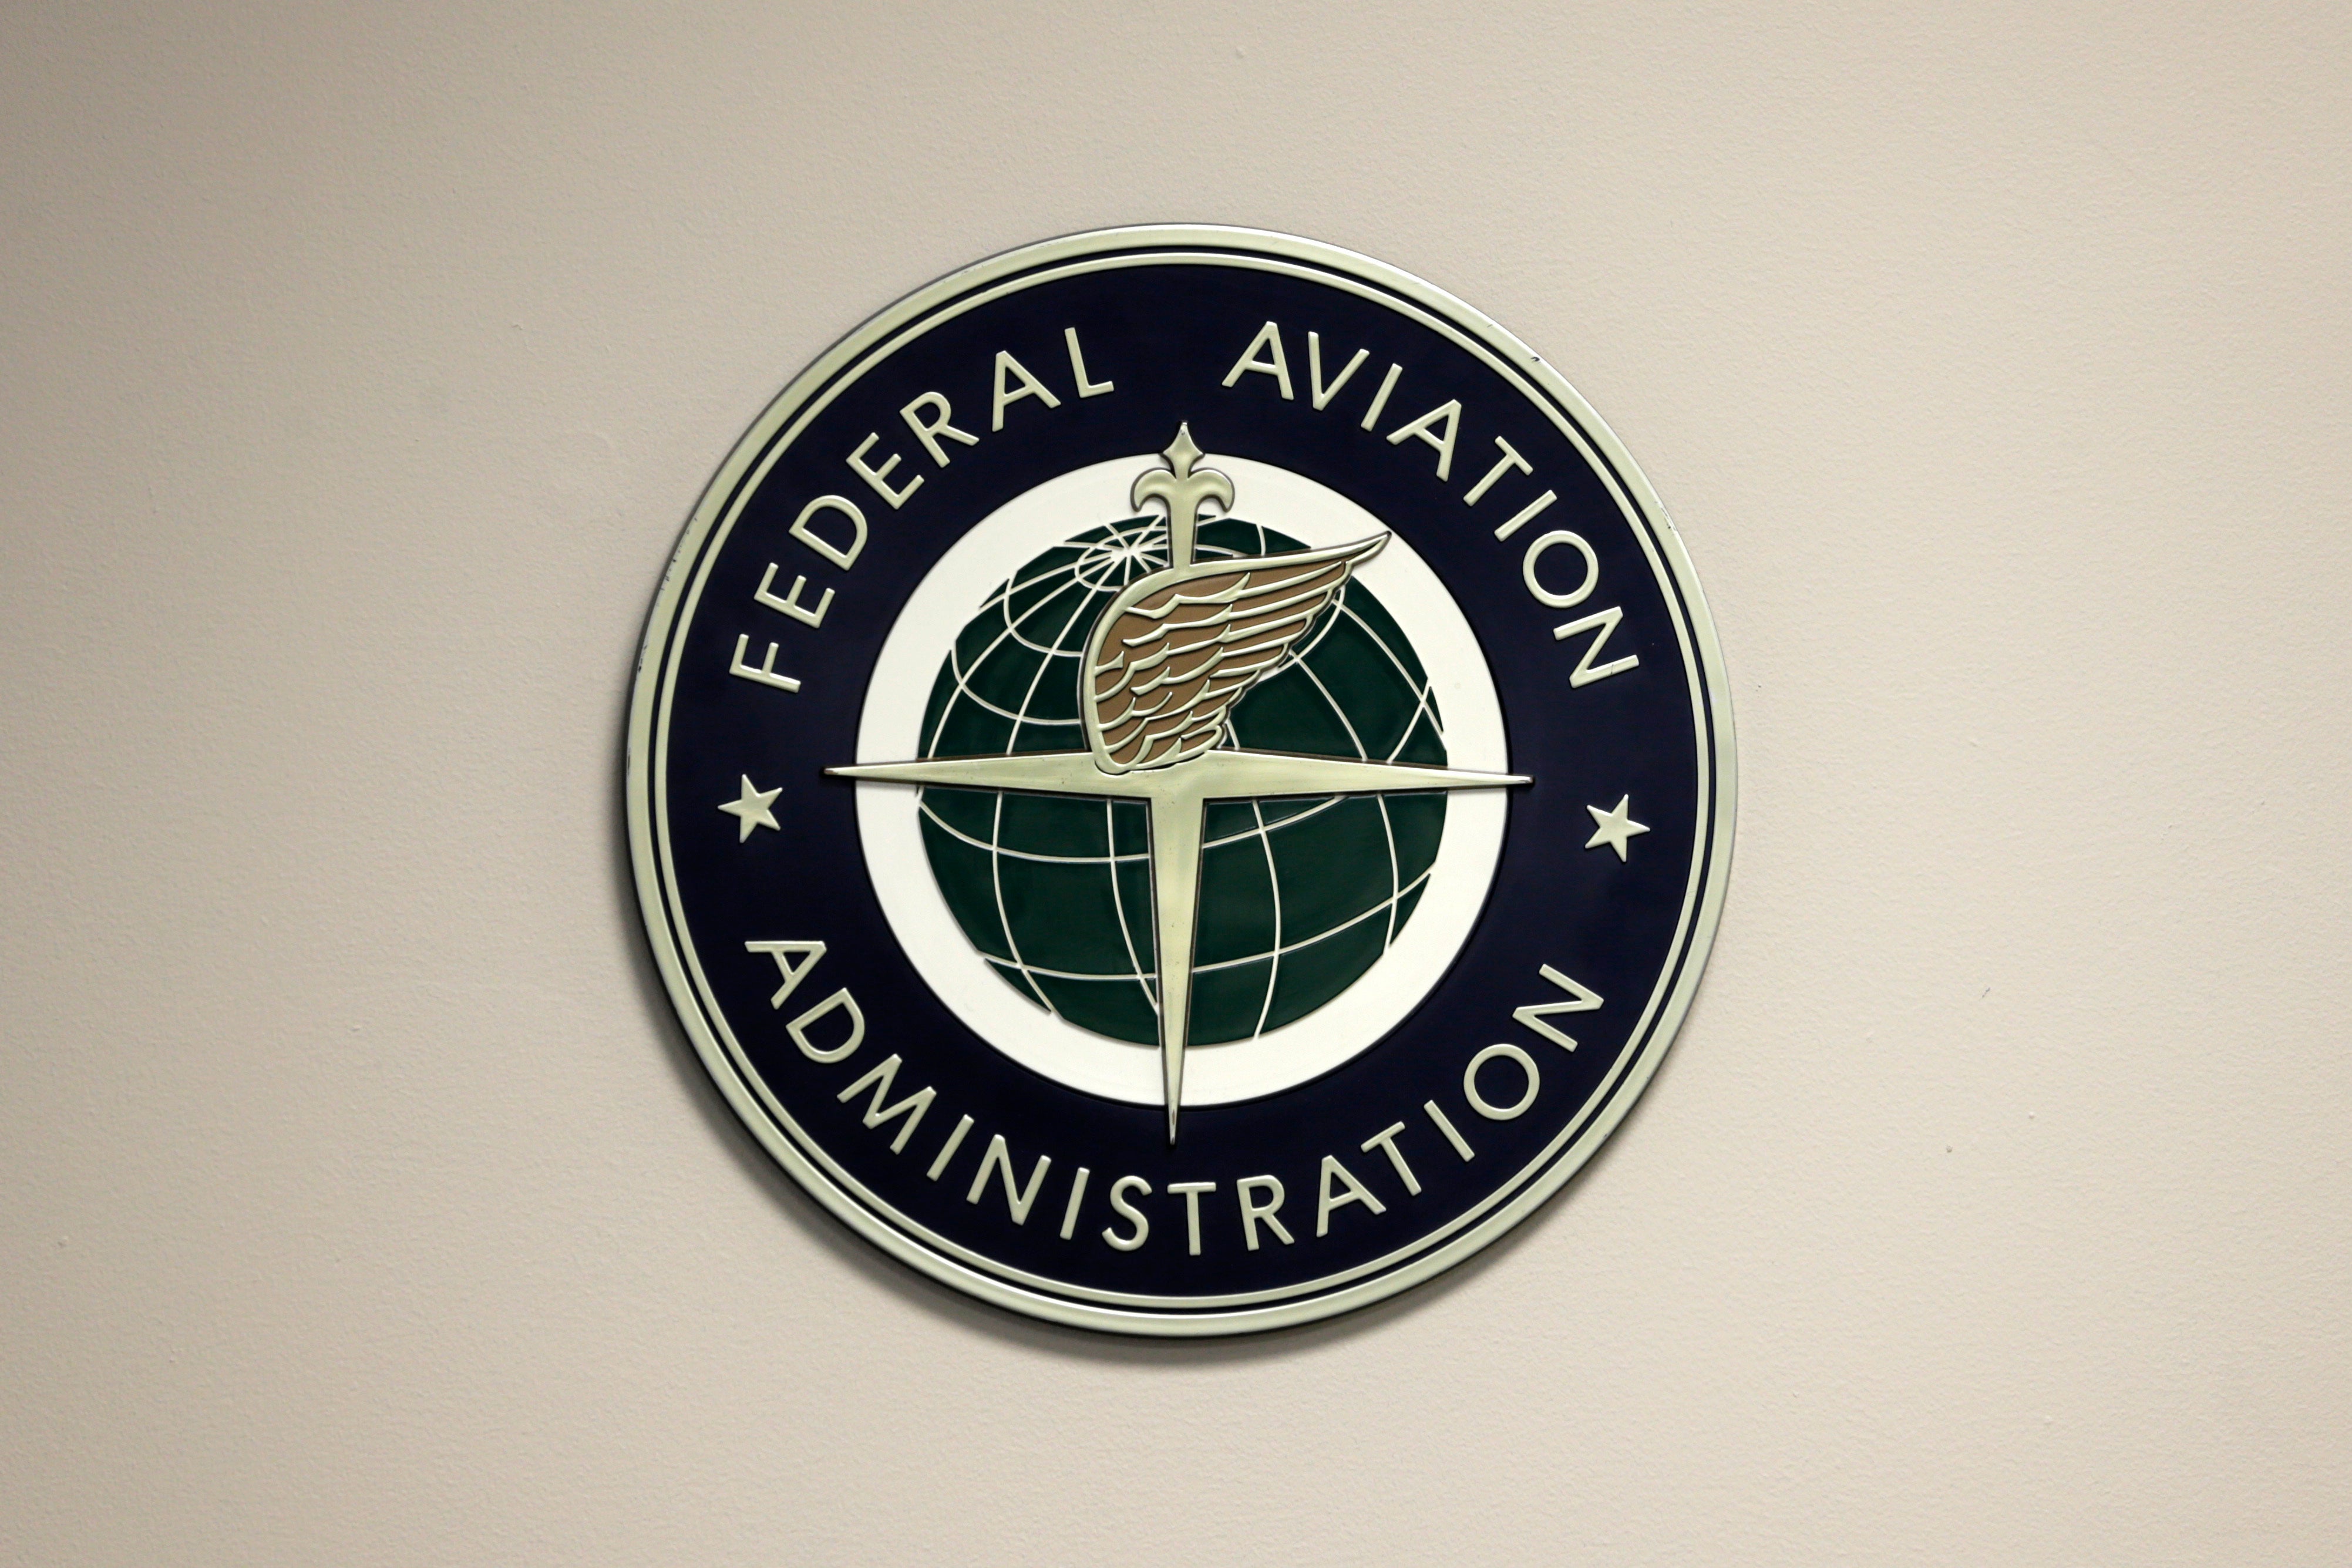 EEUU-FAA